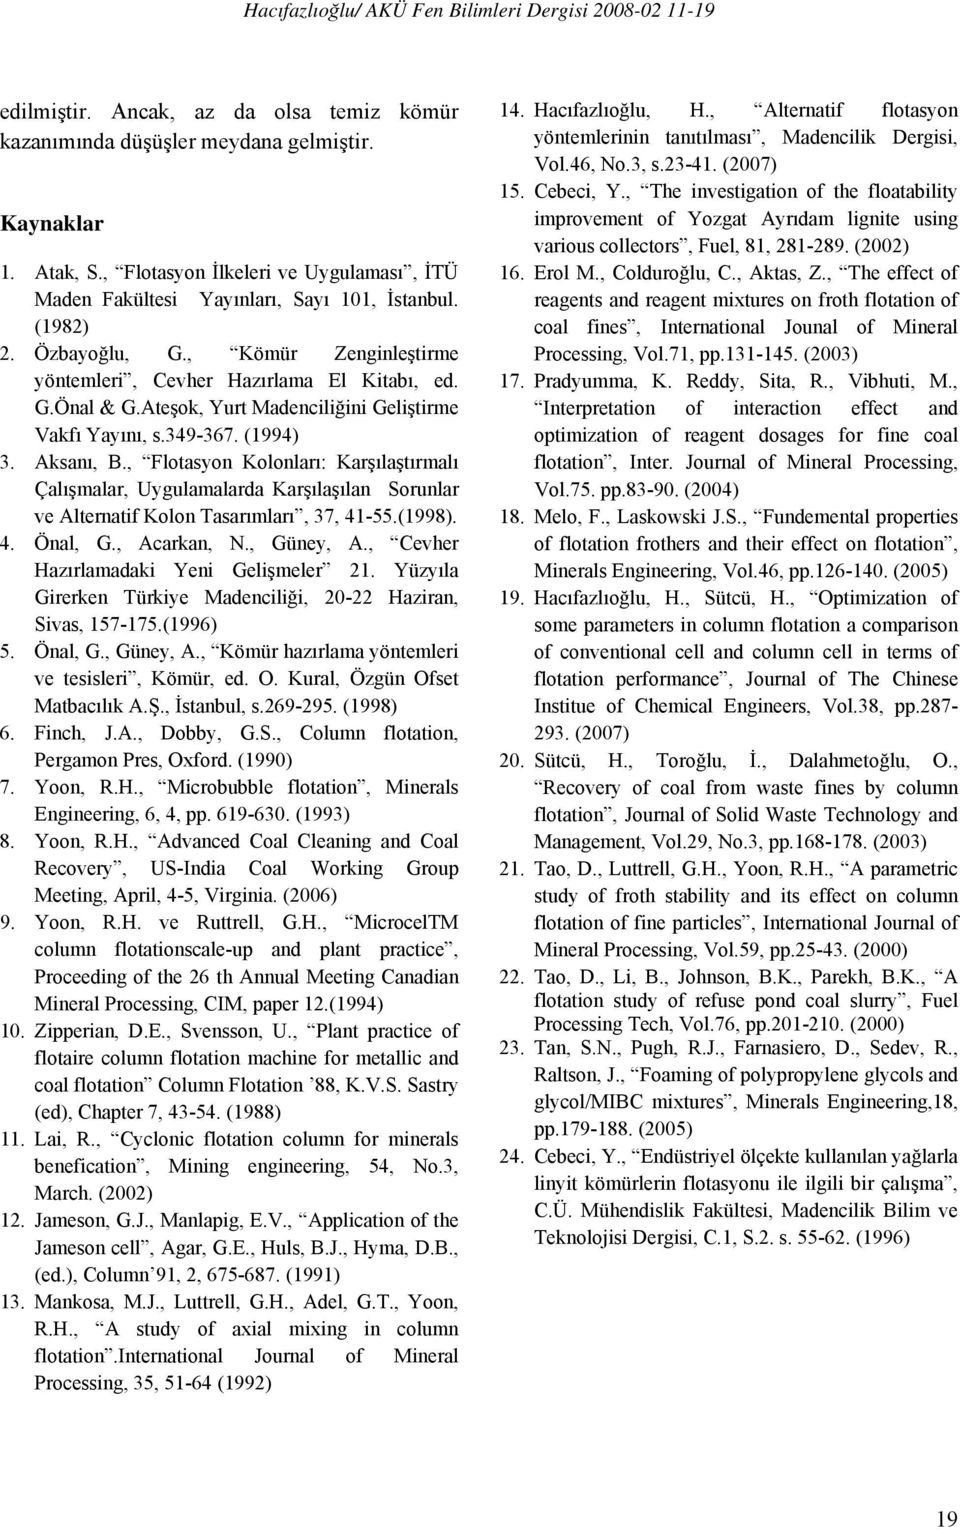 , Flotasyon Kolonları: Karşılaştırmalı Çalışmalar, Uygulamalarda Karşılaşılan Sorunlar ve Alternatif Kolon Tasarımları, 37, 41-55.(1998). 4. Önal, G., Acarkan, N., Güney, A.